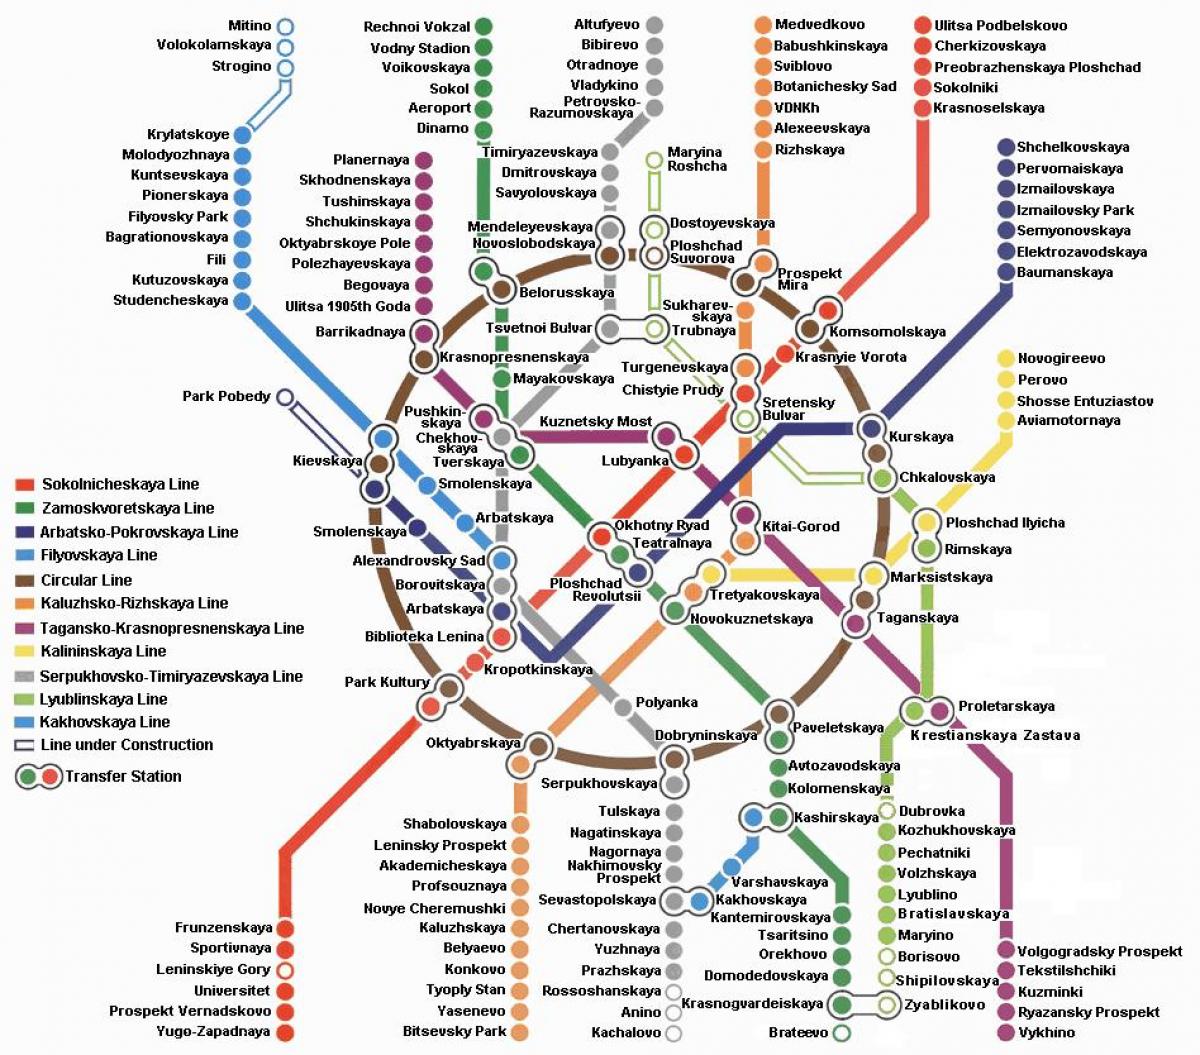 Moscow metro zemljevid v angleškem jeziku